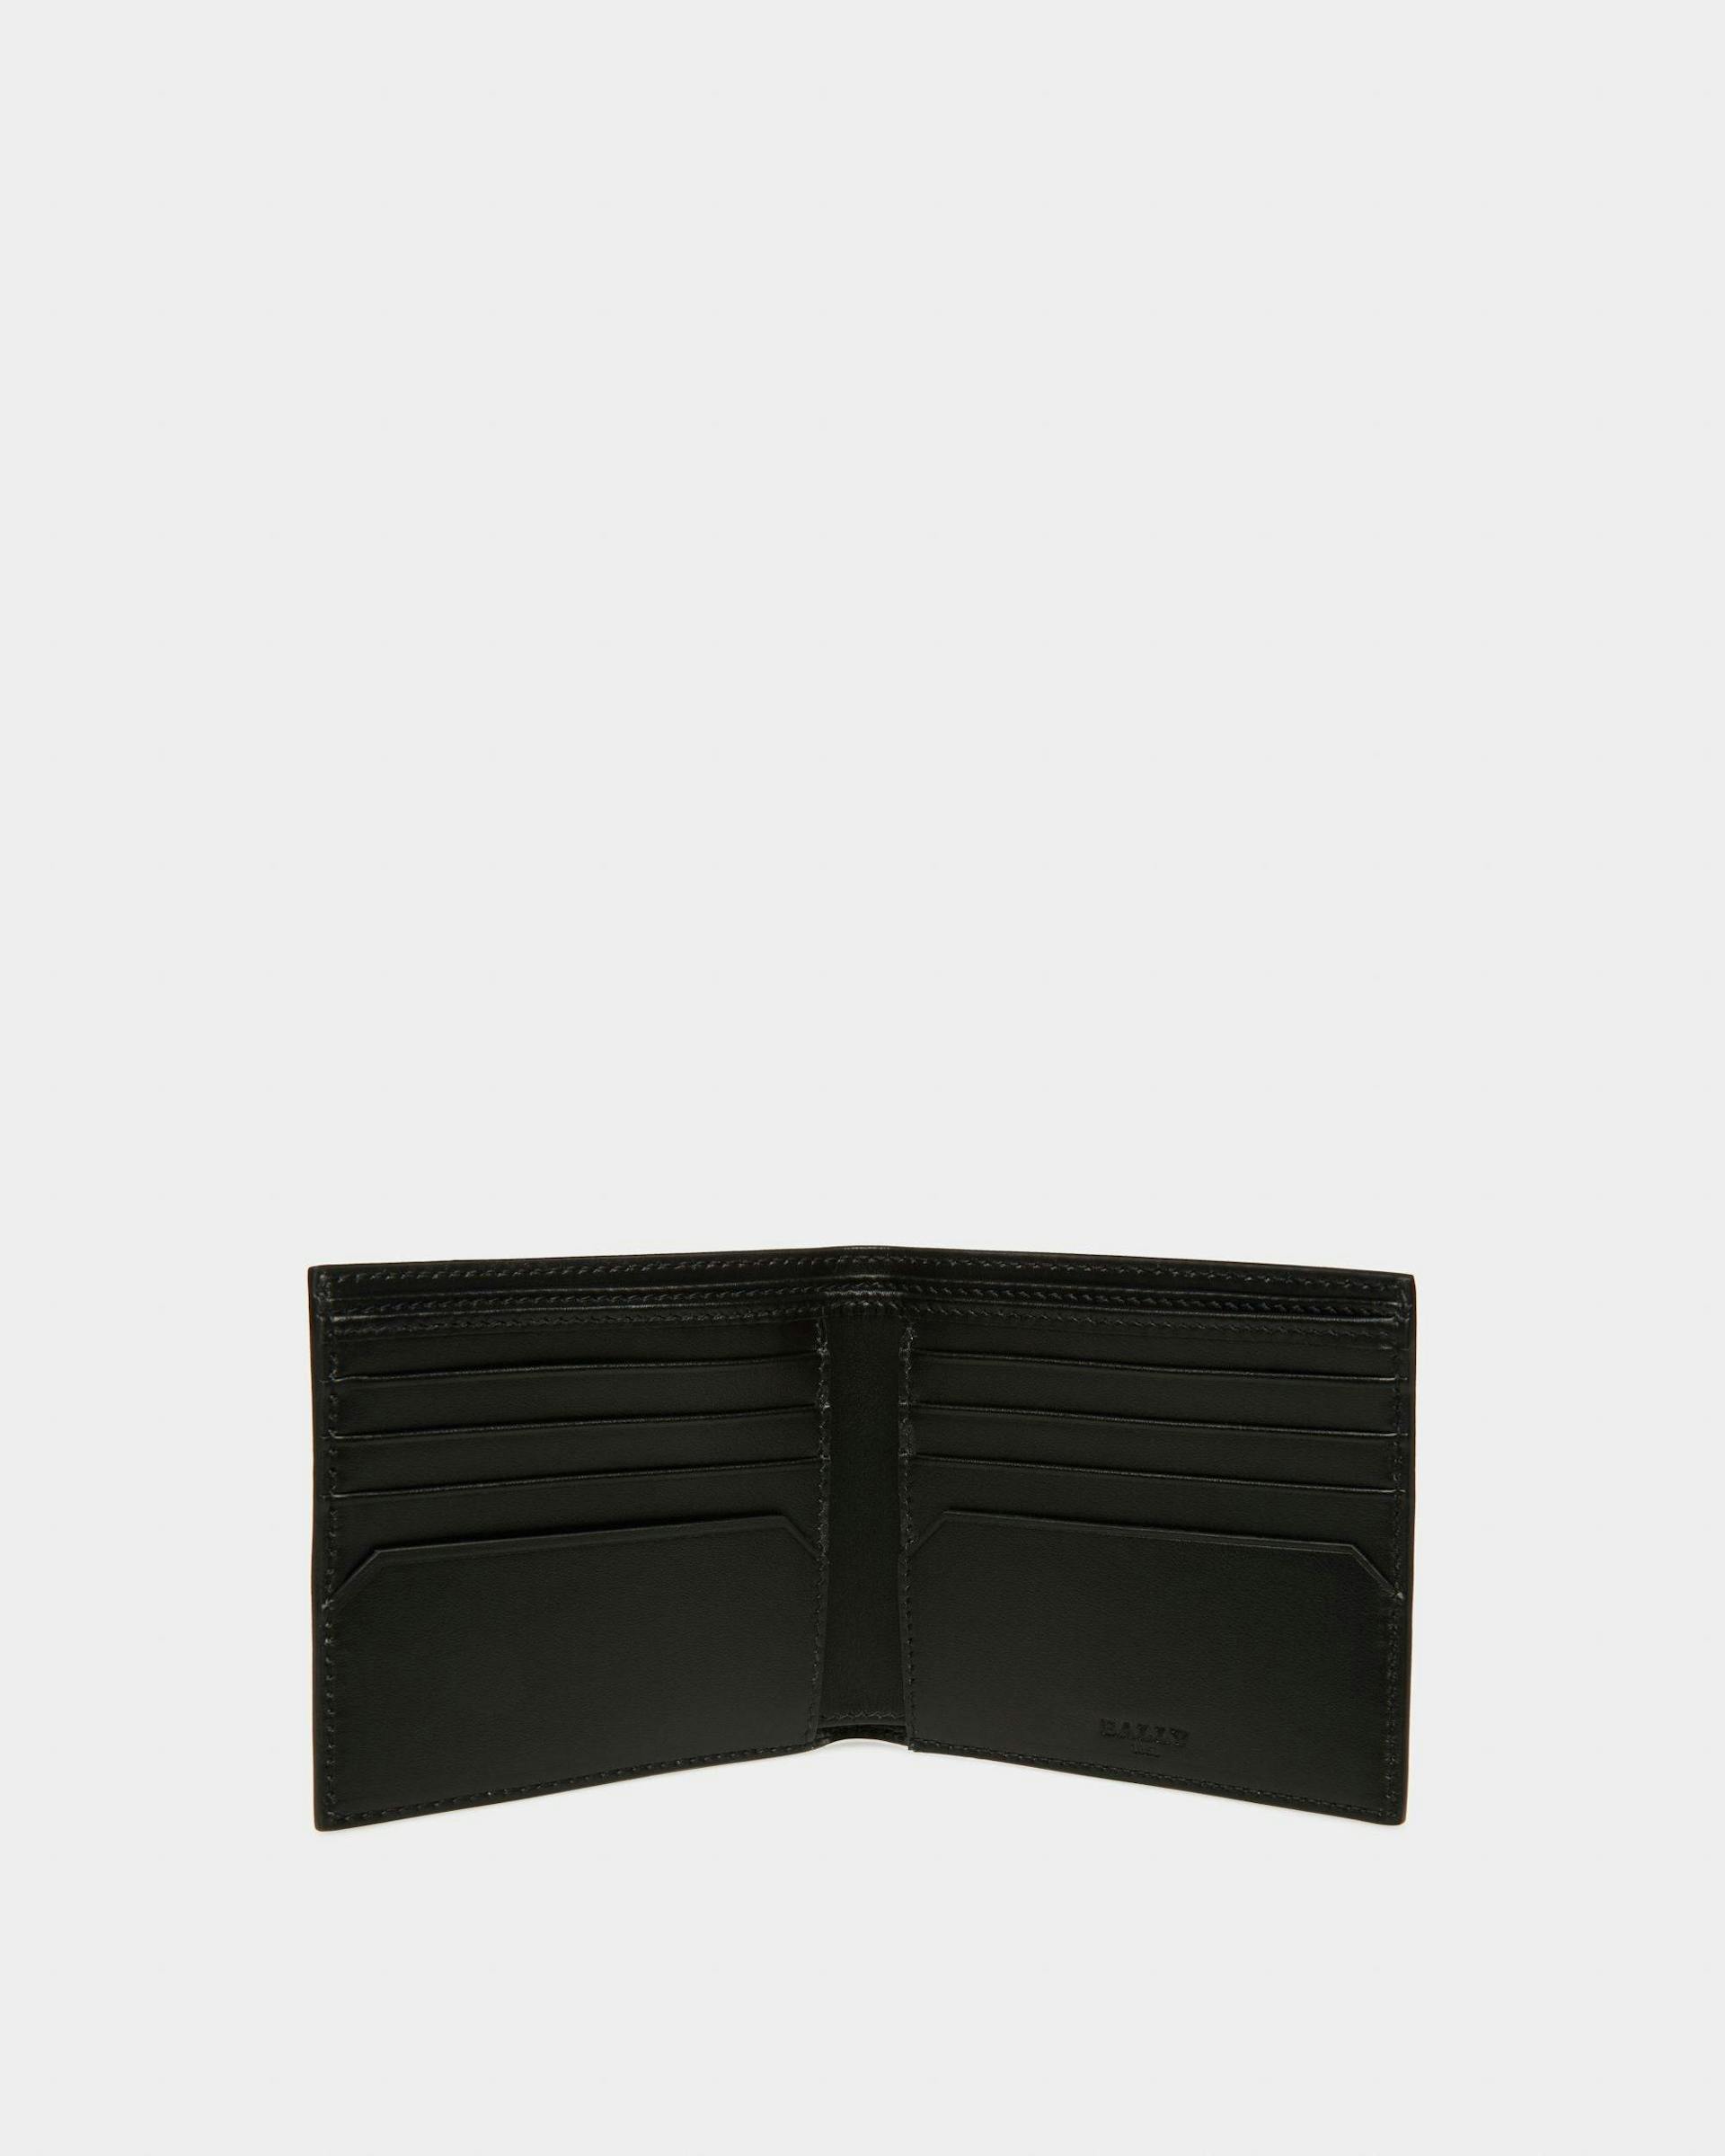 Brasai Leather Wallet In Black & Green - Men's - Bally - 03